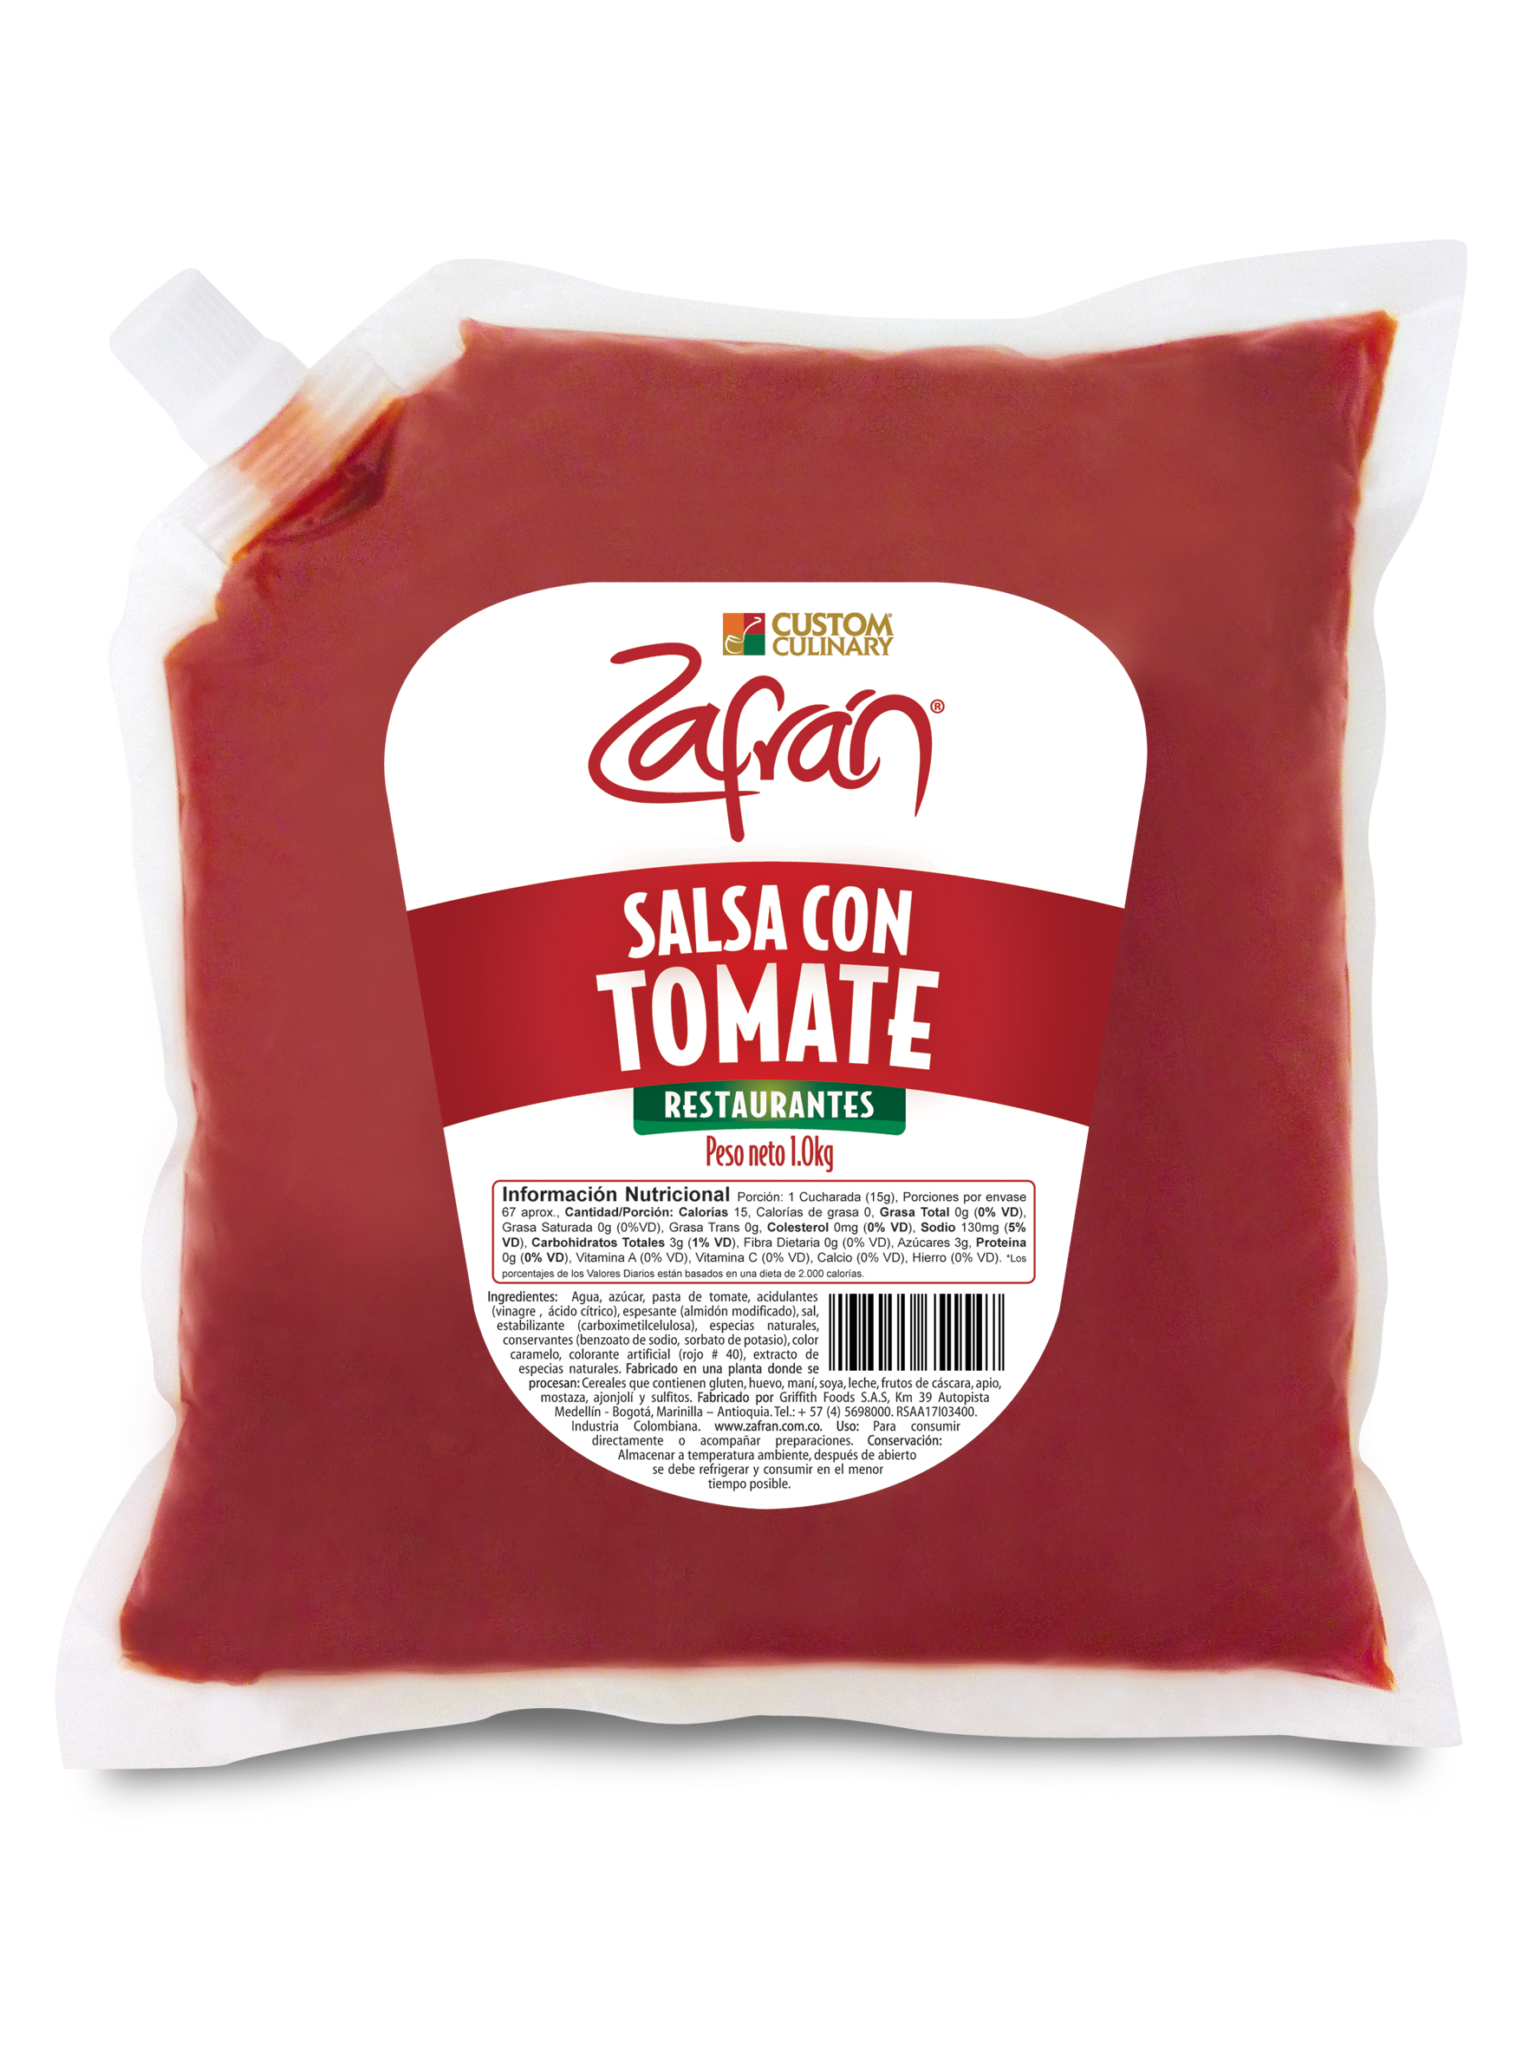 Deliciosa salsa con tomate bolsa válvula , para restaurantes